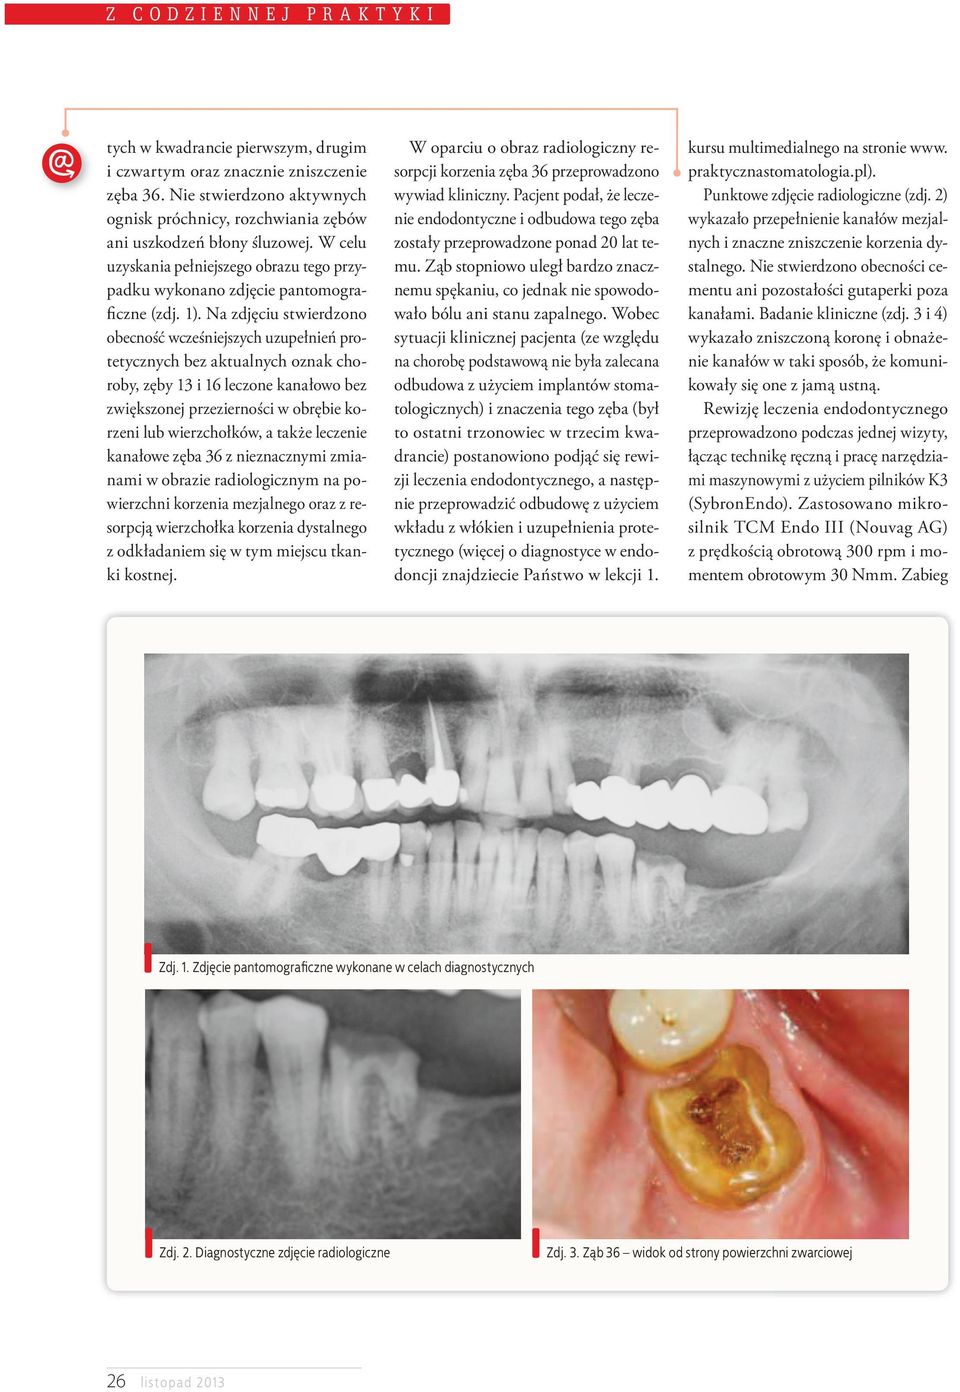 Na zdjęciu stwierdzono obecność wcześniejszych uzupełnień protetycznych bez aktualnych oznak choroby, zęby 13 i 16 leczone kanałowo bez zwiększonej przezierności w obrębie korzeni lub wierzchołków, a